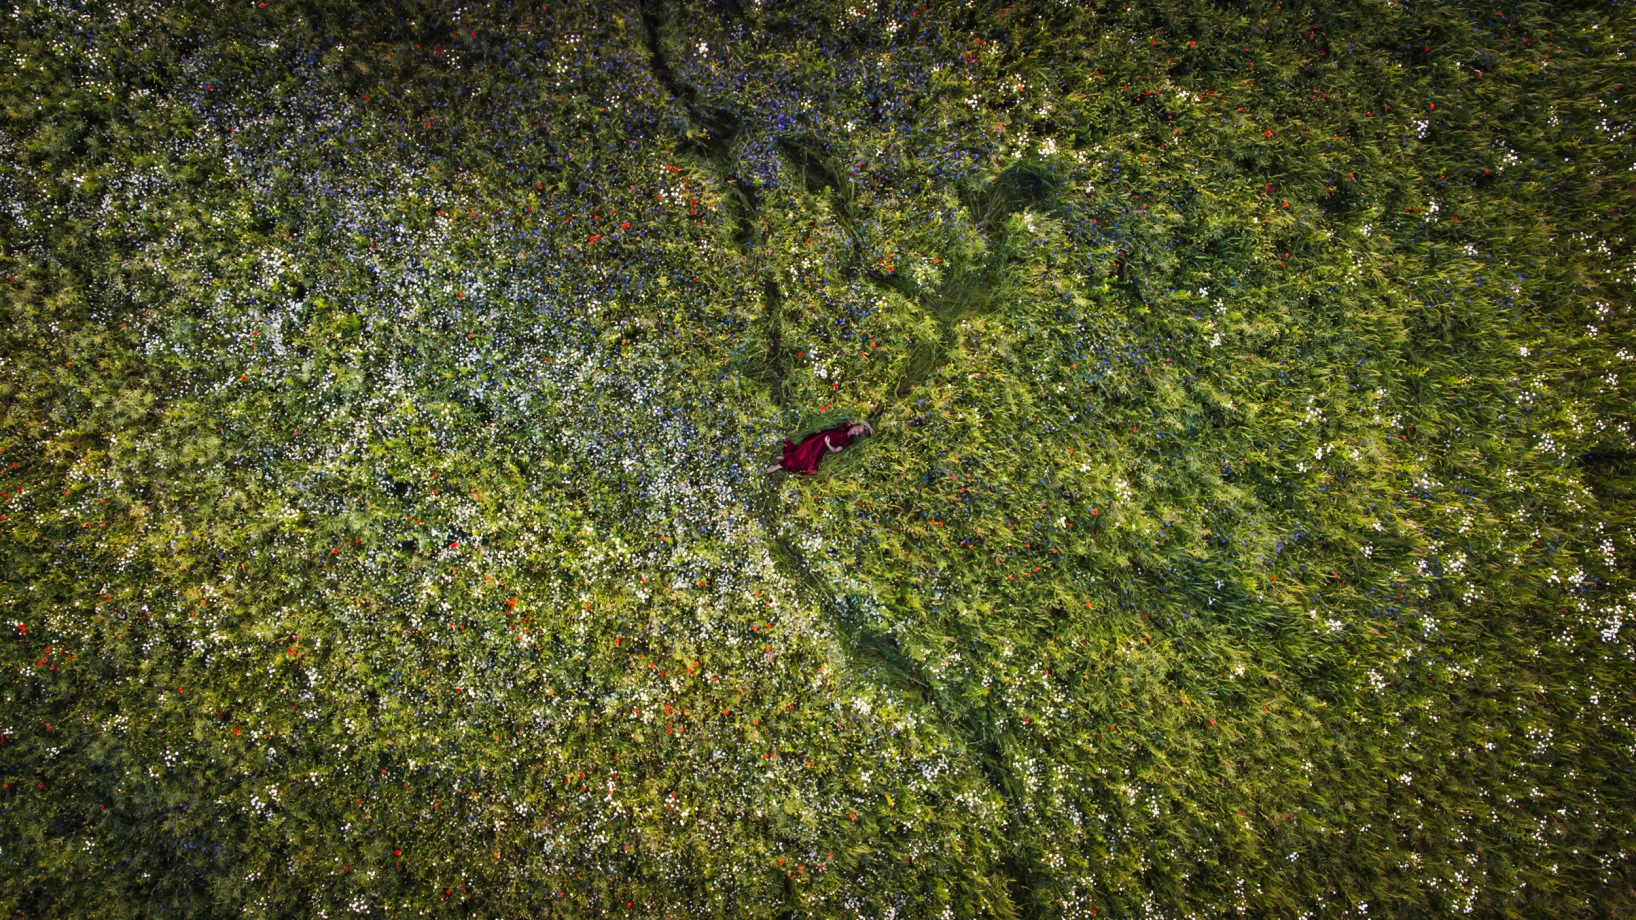 zdjęcia bialystok fotograf pawel-balejko portfolio zdjecia z dronow fotografia dronowa